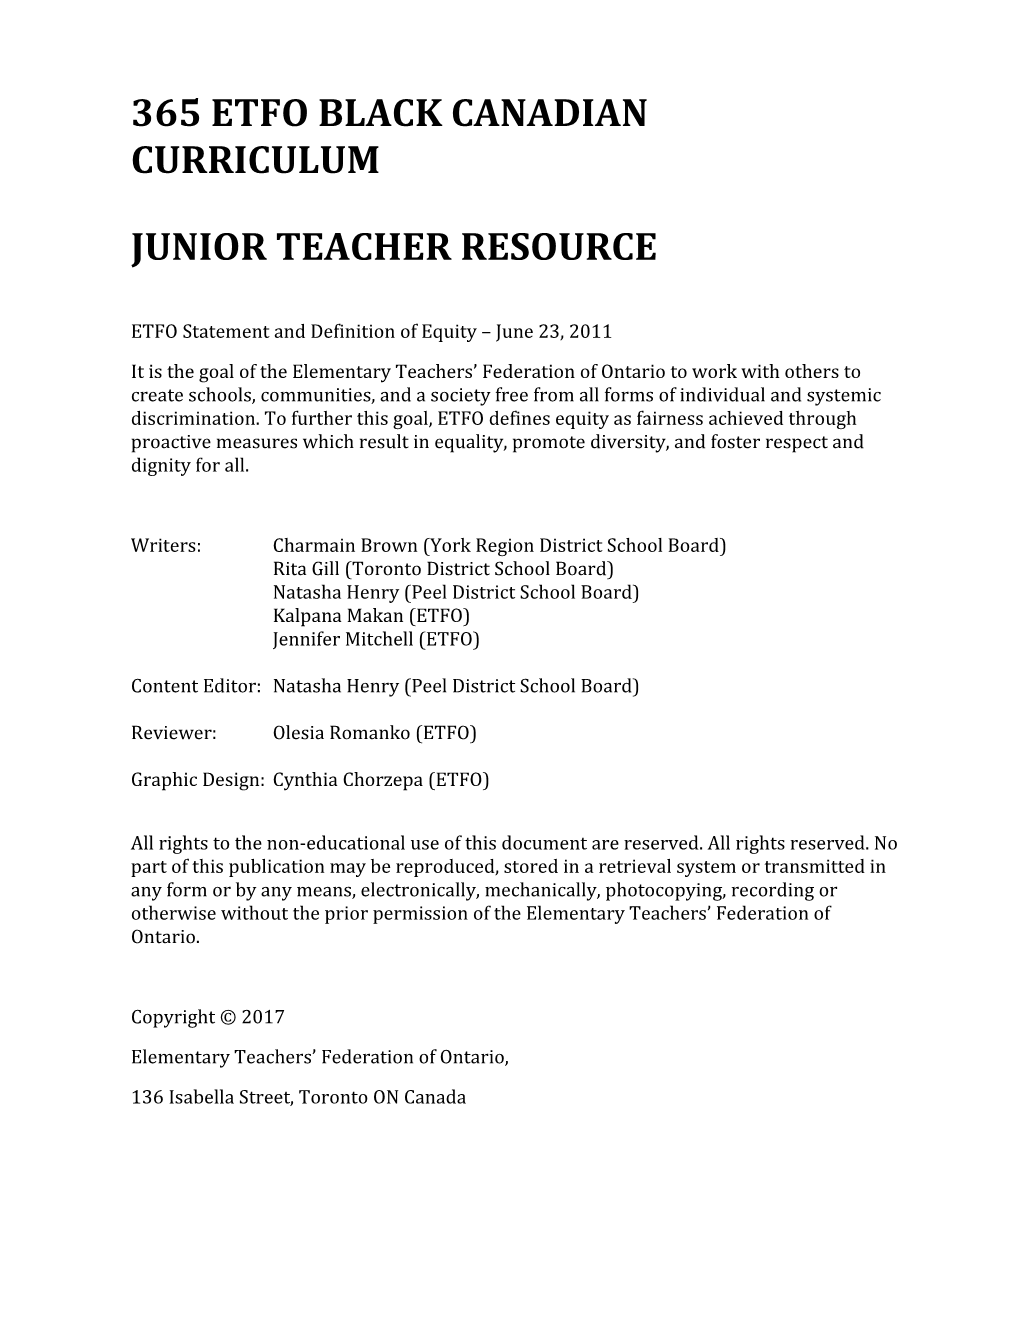 365 ETFO Black Canadian Curriculum - Junior